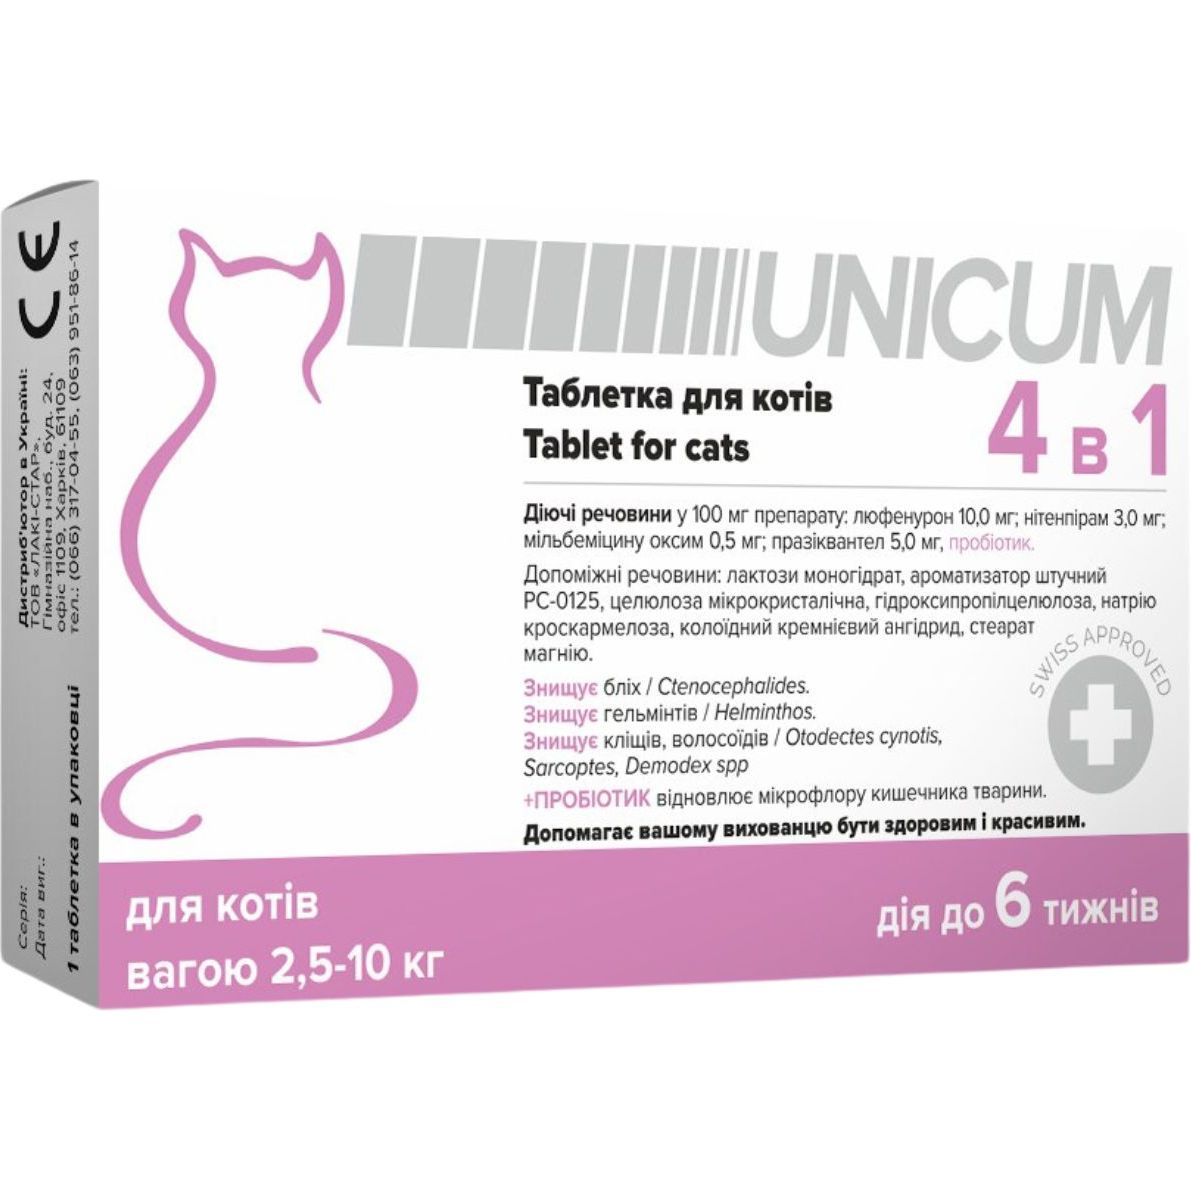 Таблетка для кошек Unicum 4 в 1 от блох, клещей, гильминтов, с пробиотиком 2.5-10 кг - фото 1